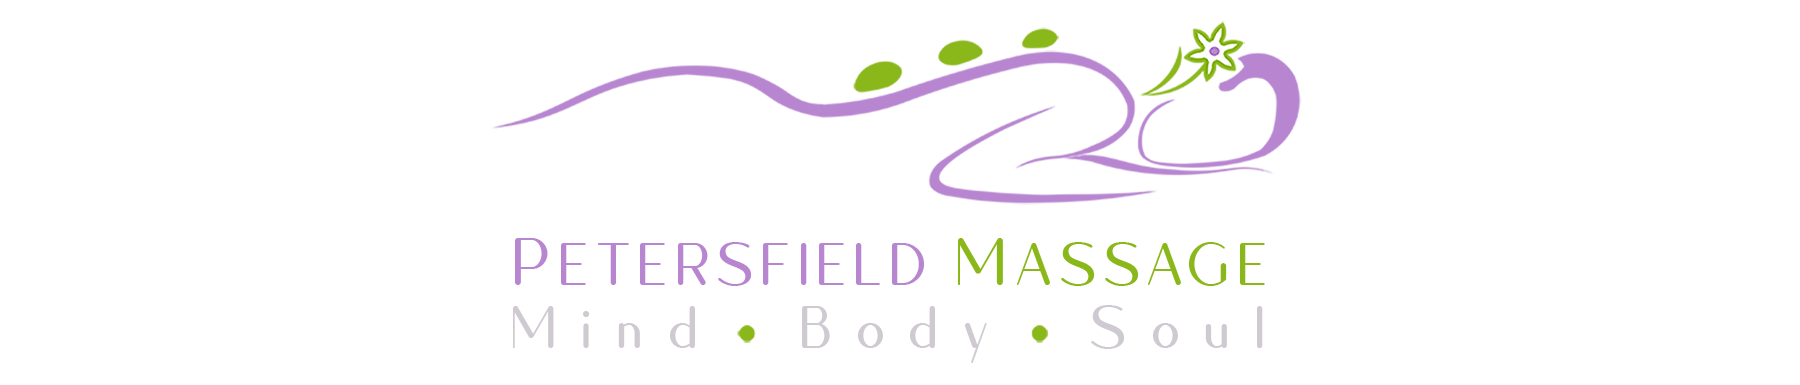 Petersfield Massage 